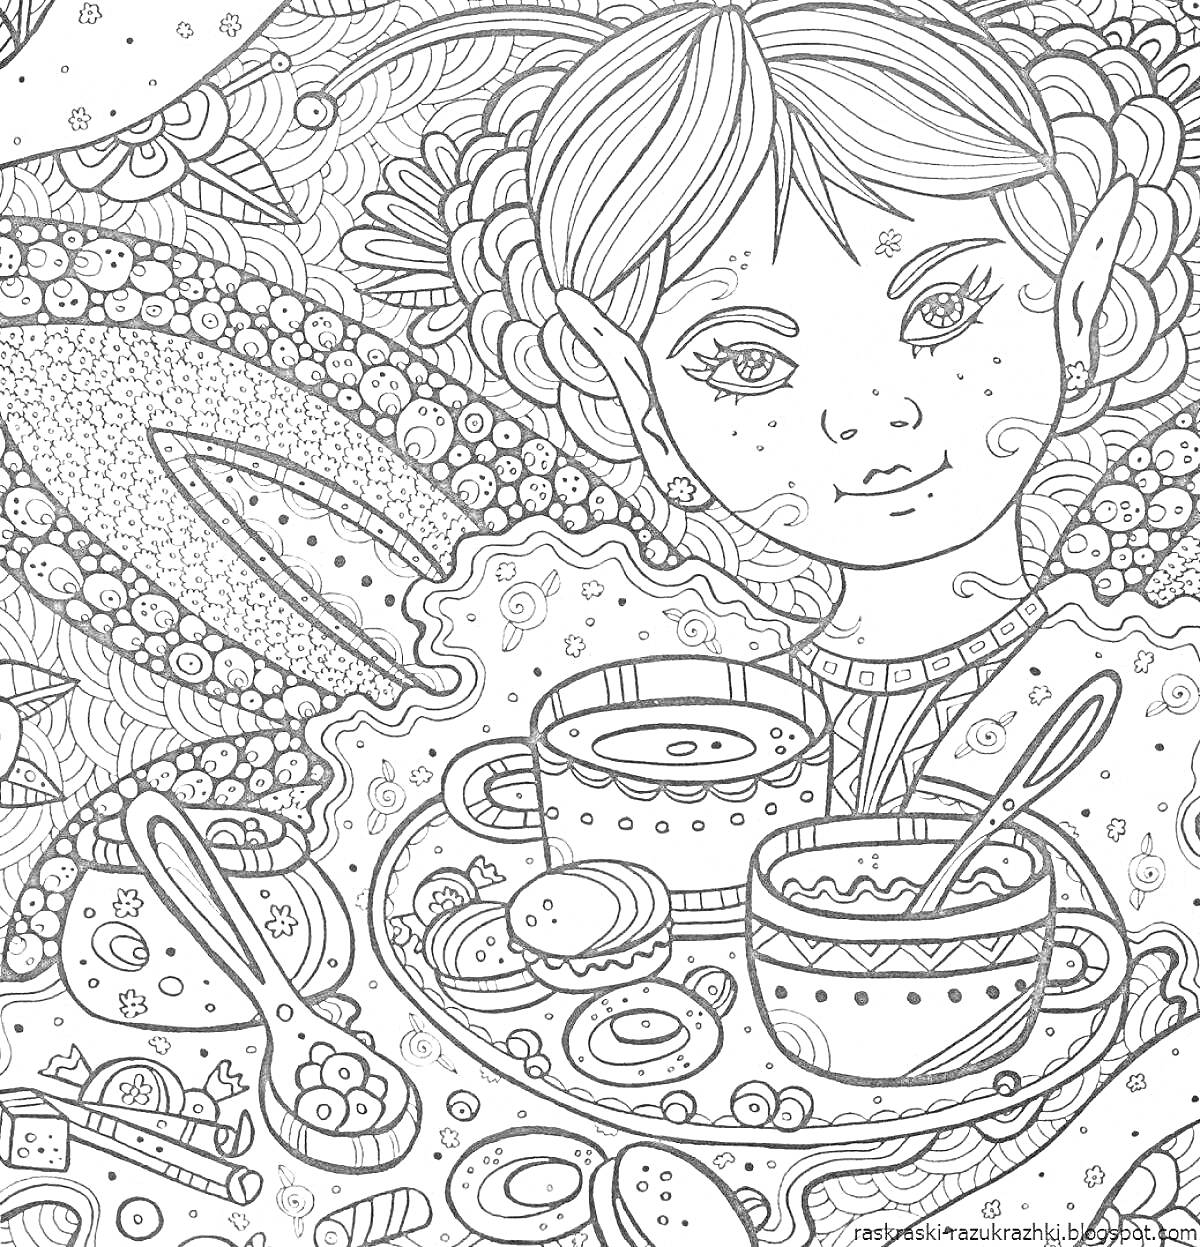 Раскраска Девочка в окружении фантастических элементов с посудой и сладостями